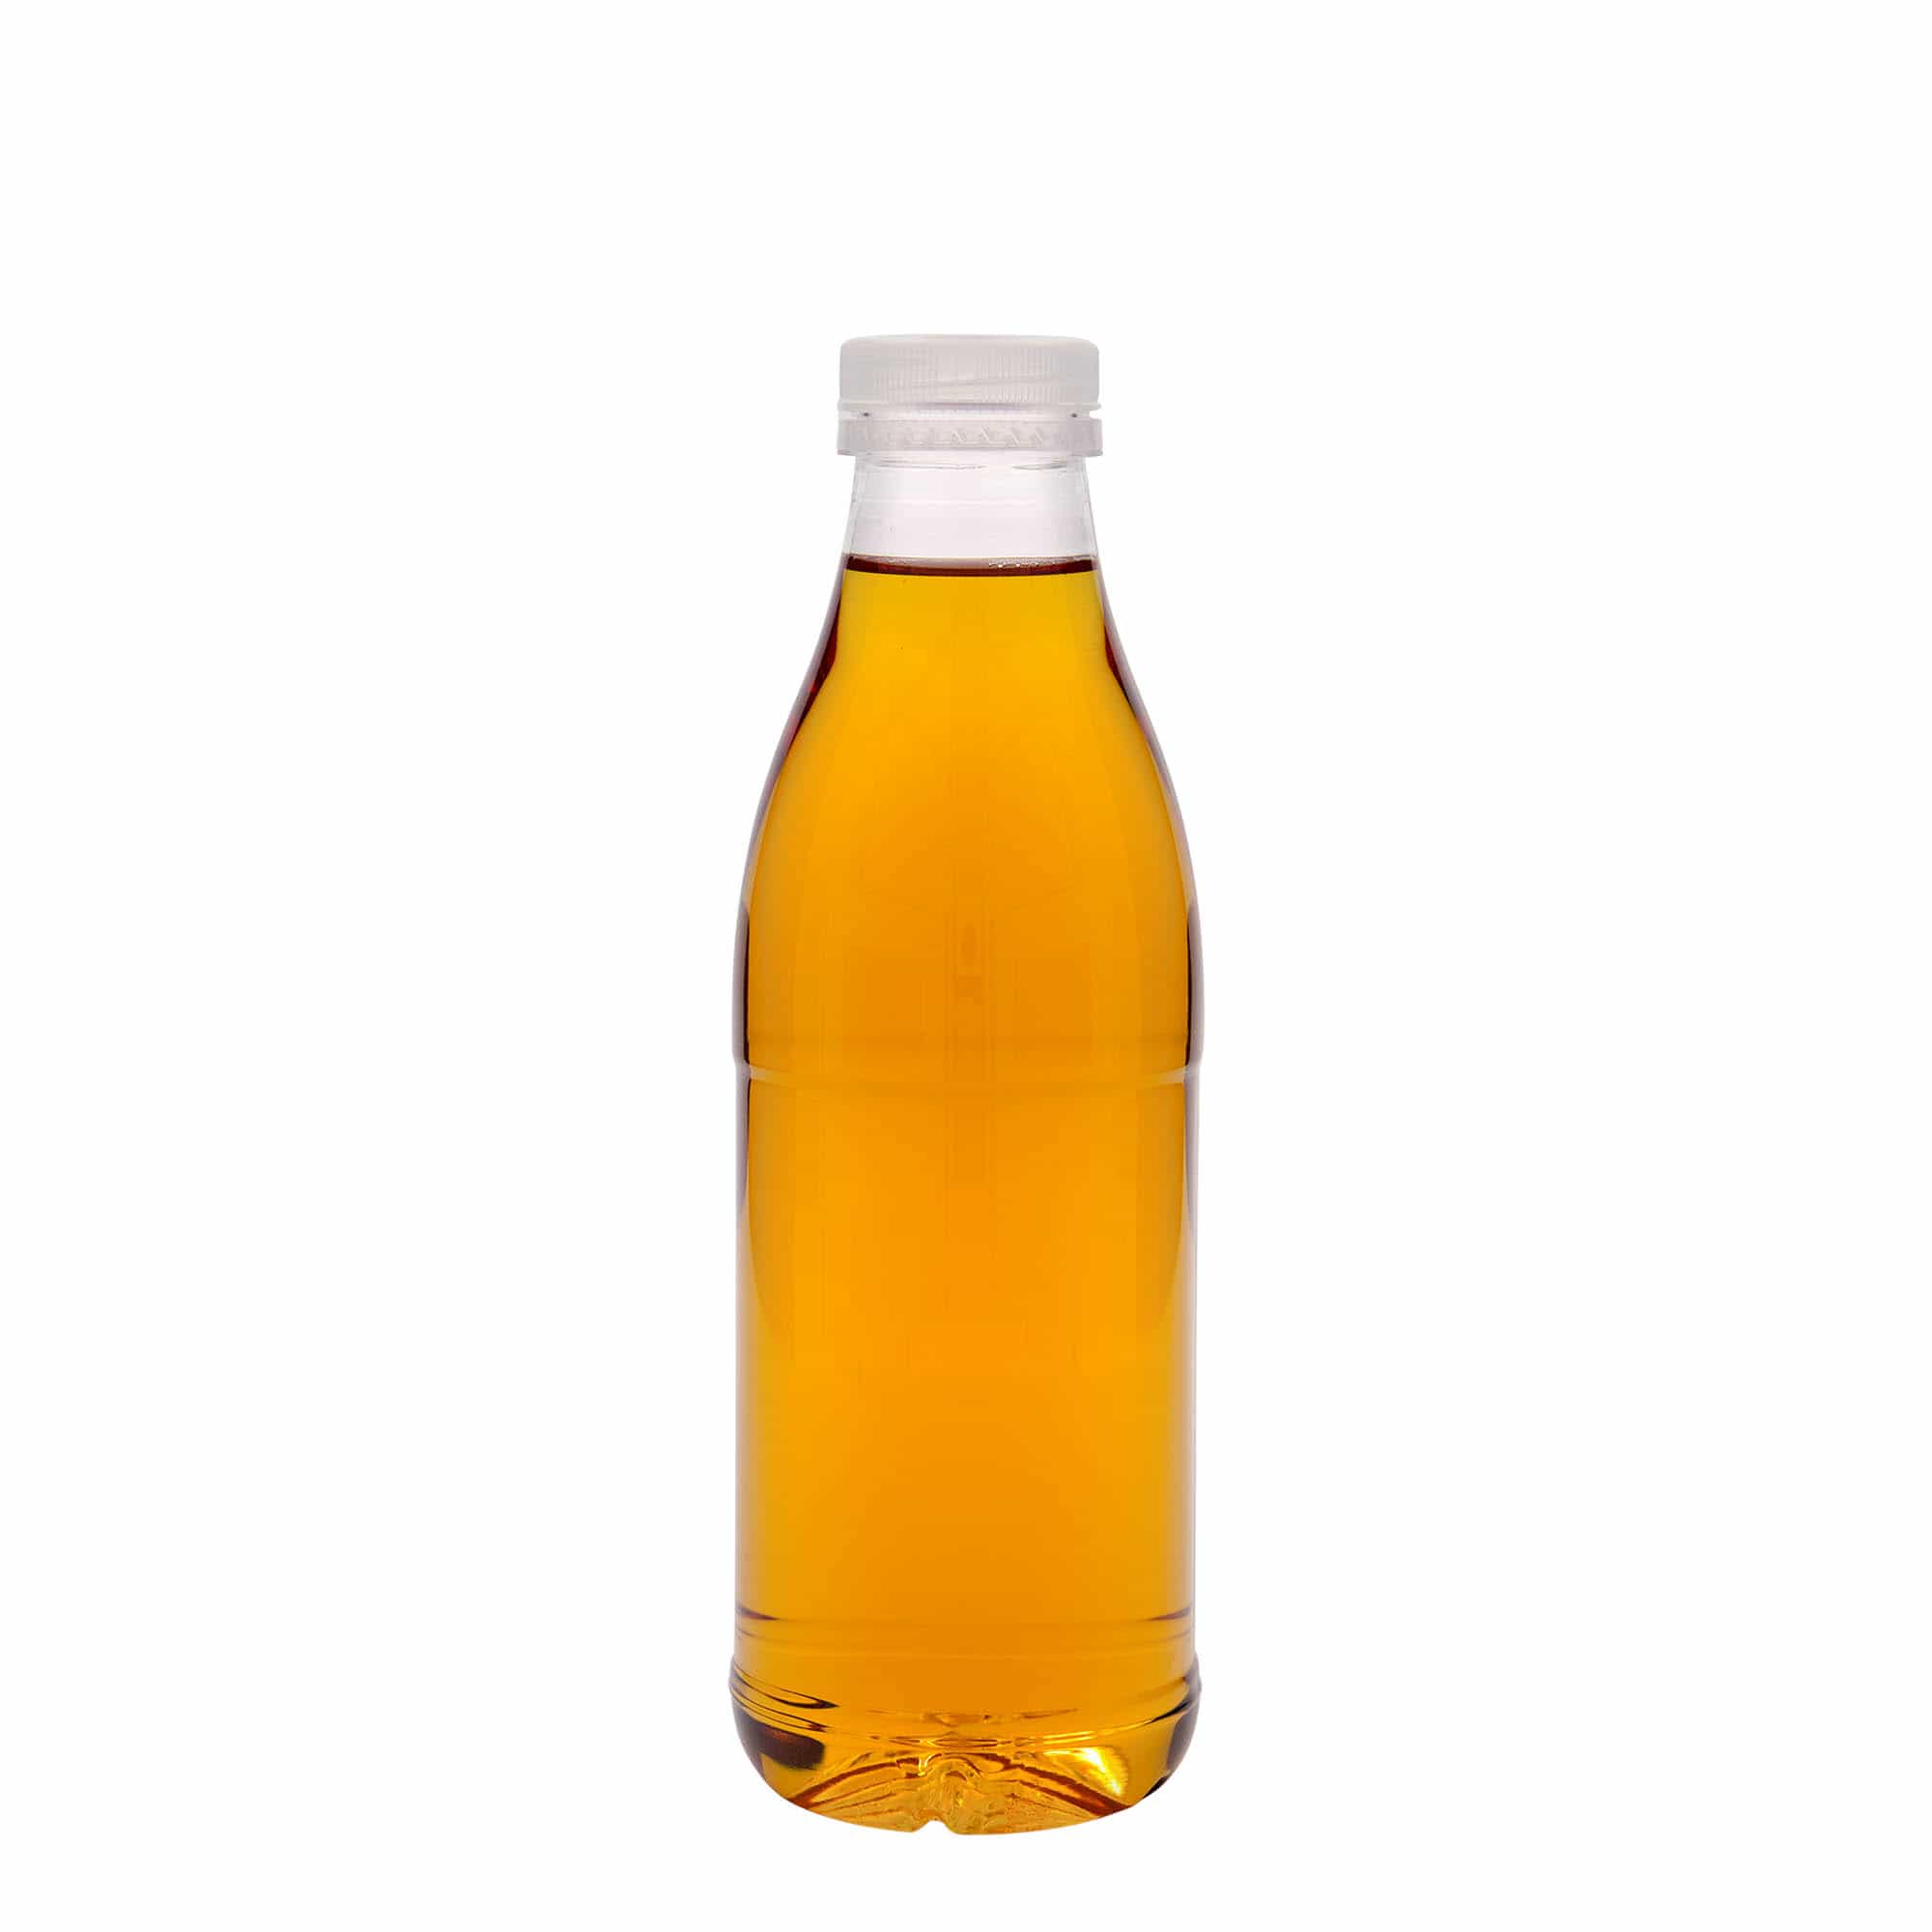 Botella de PET 'Milk and Juice' de 750 ml, plástico, boca: 38 mm